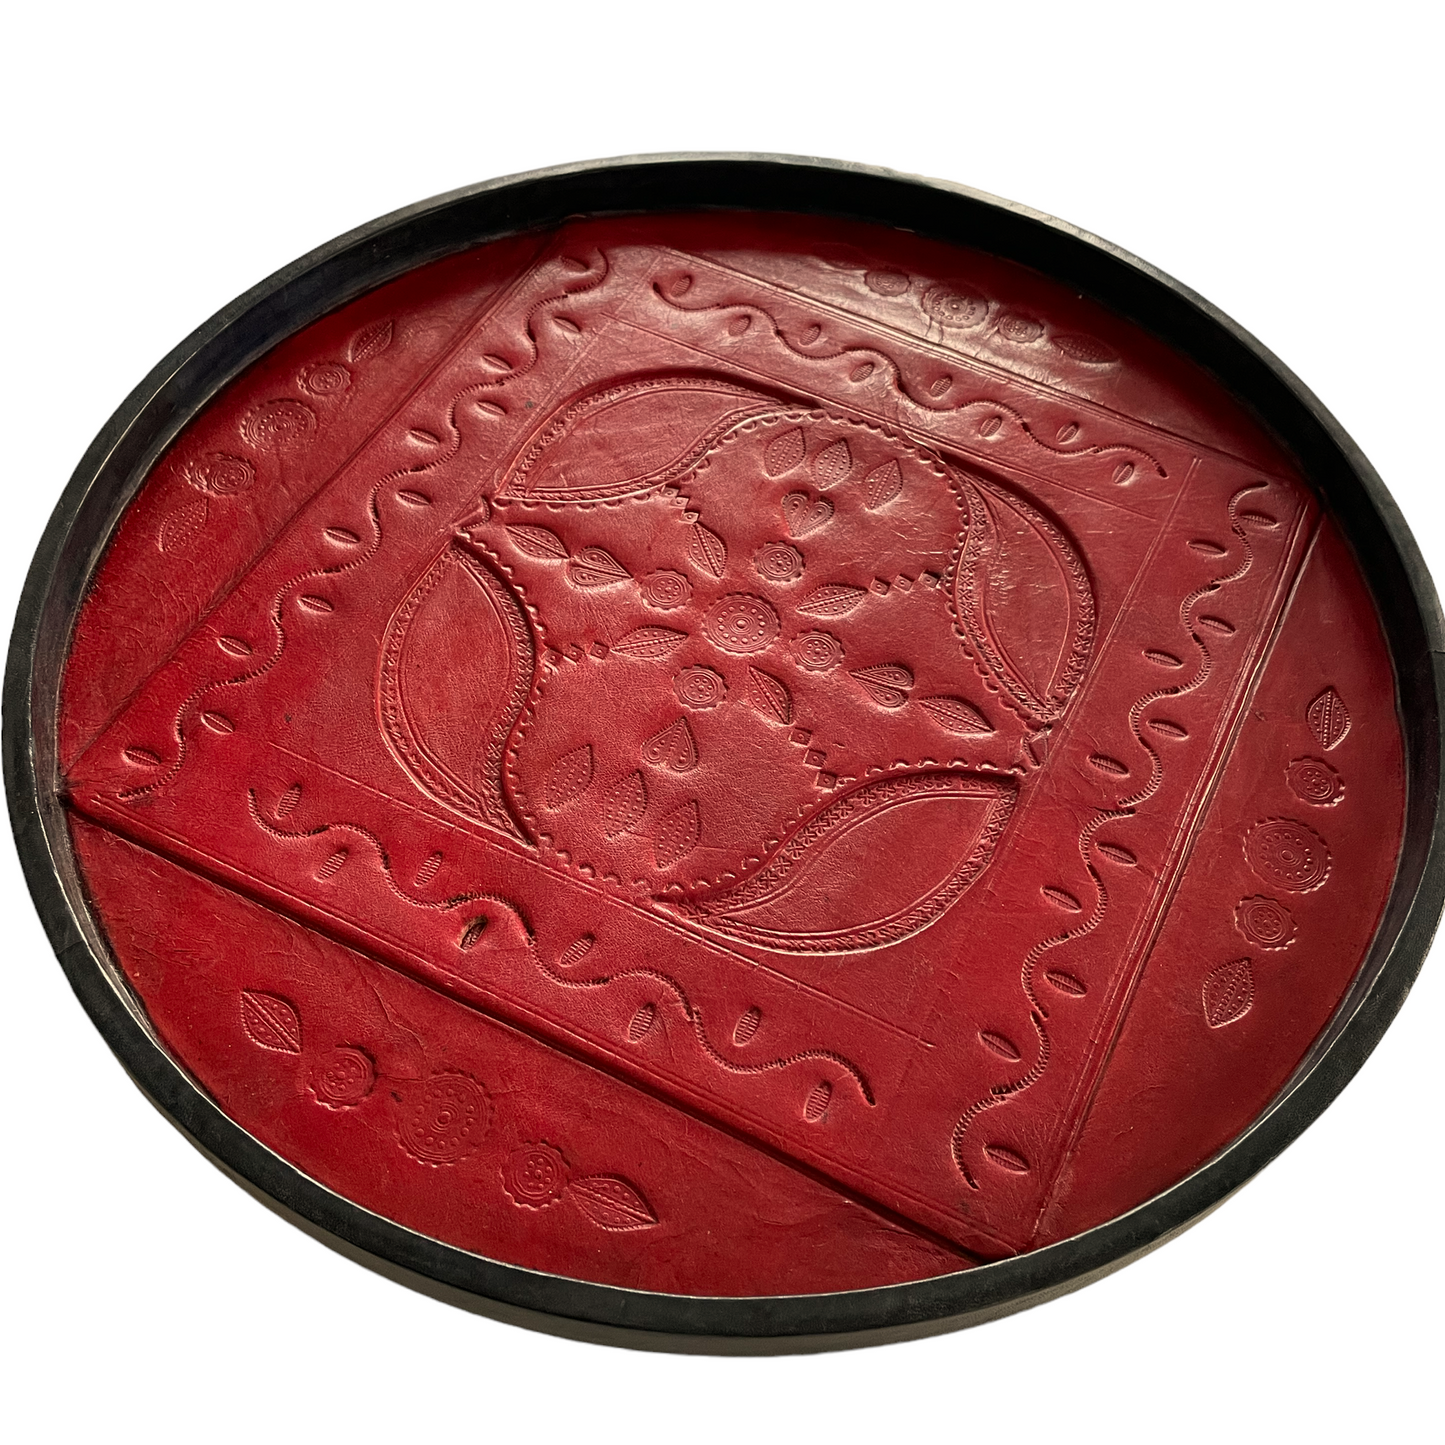 Serveringsbakke i læder, rød og sort, 40 cm i diameter. Håndlavet og Fair Trade fra Senegal